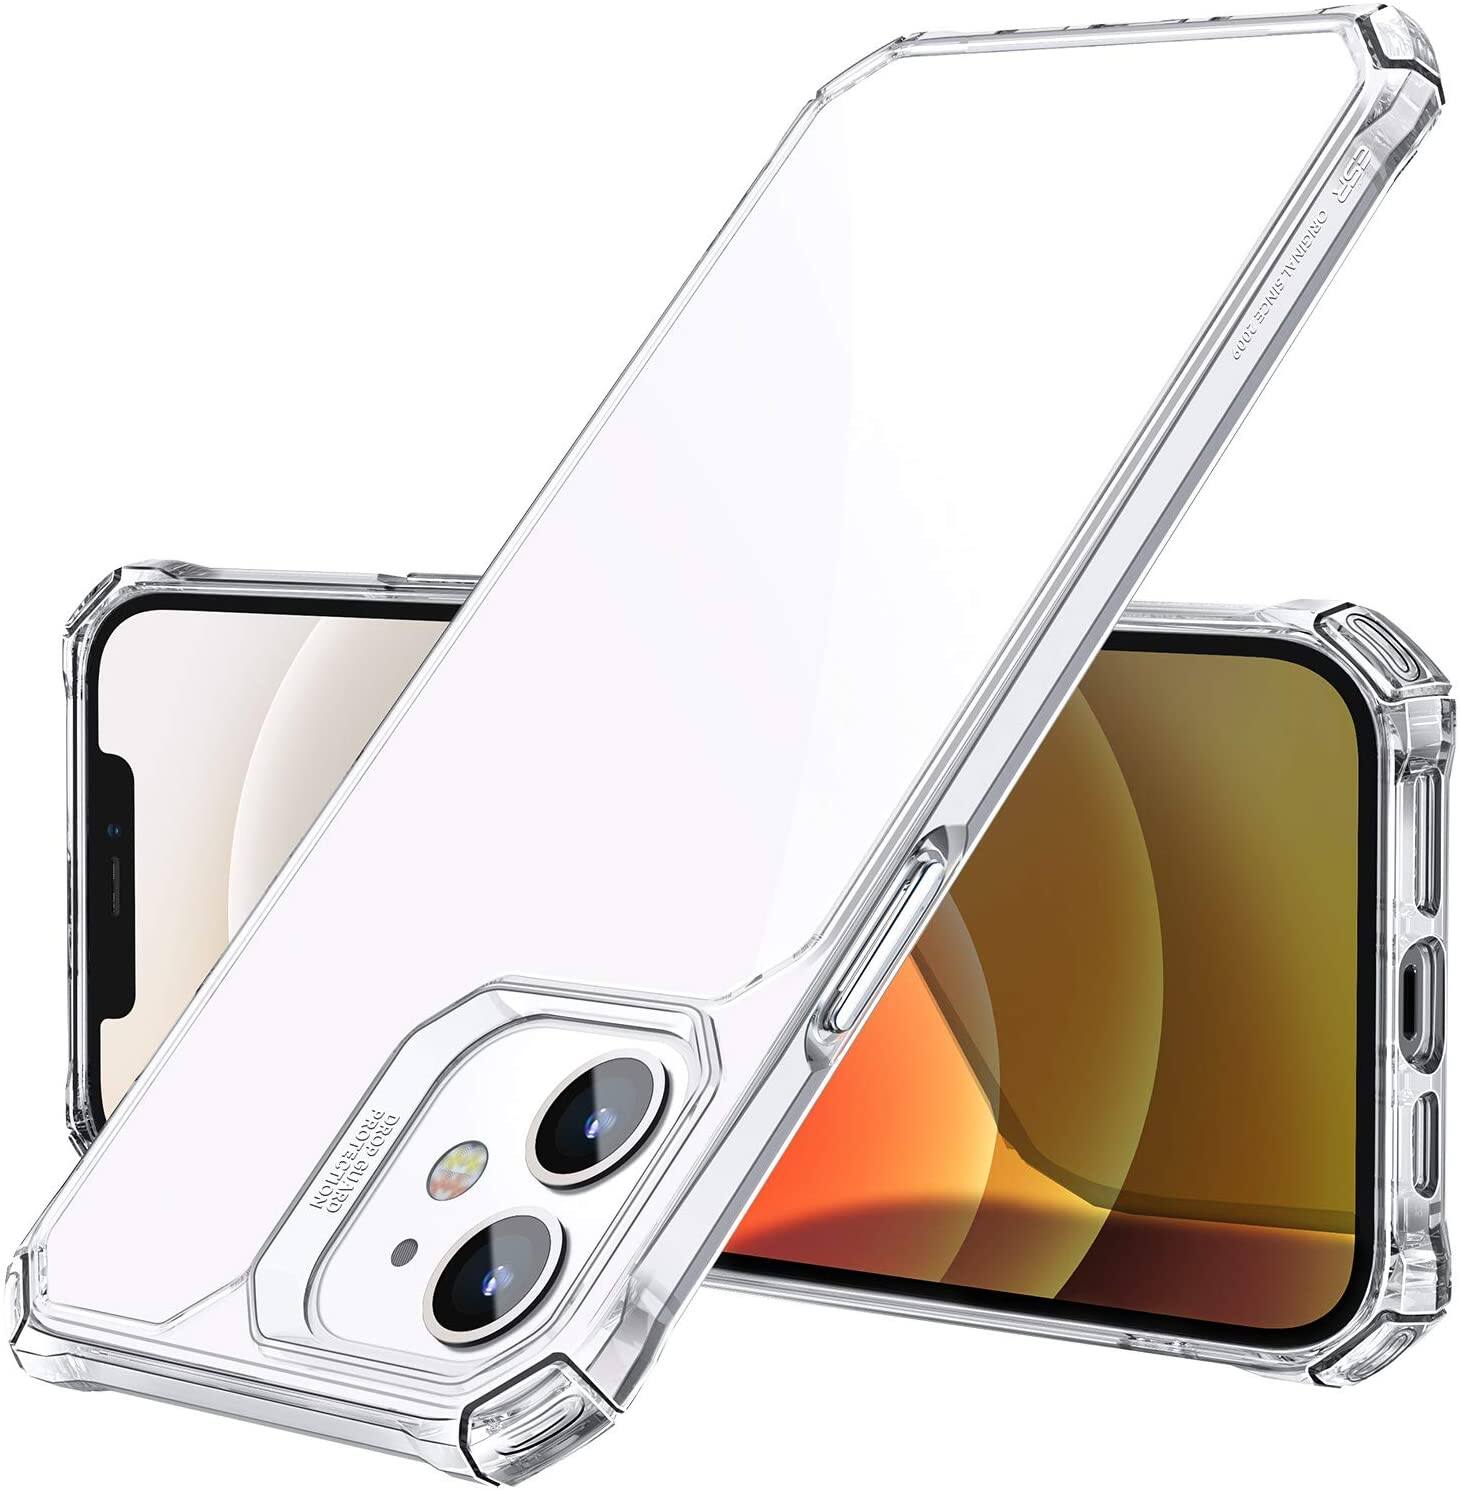 ESR iPhone 12, 12 Pro, 12 Mini and Pro Max Case from $6.59 to $7.60 + FS w/ Prime